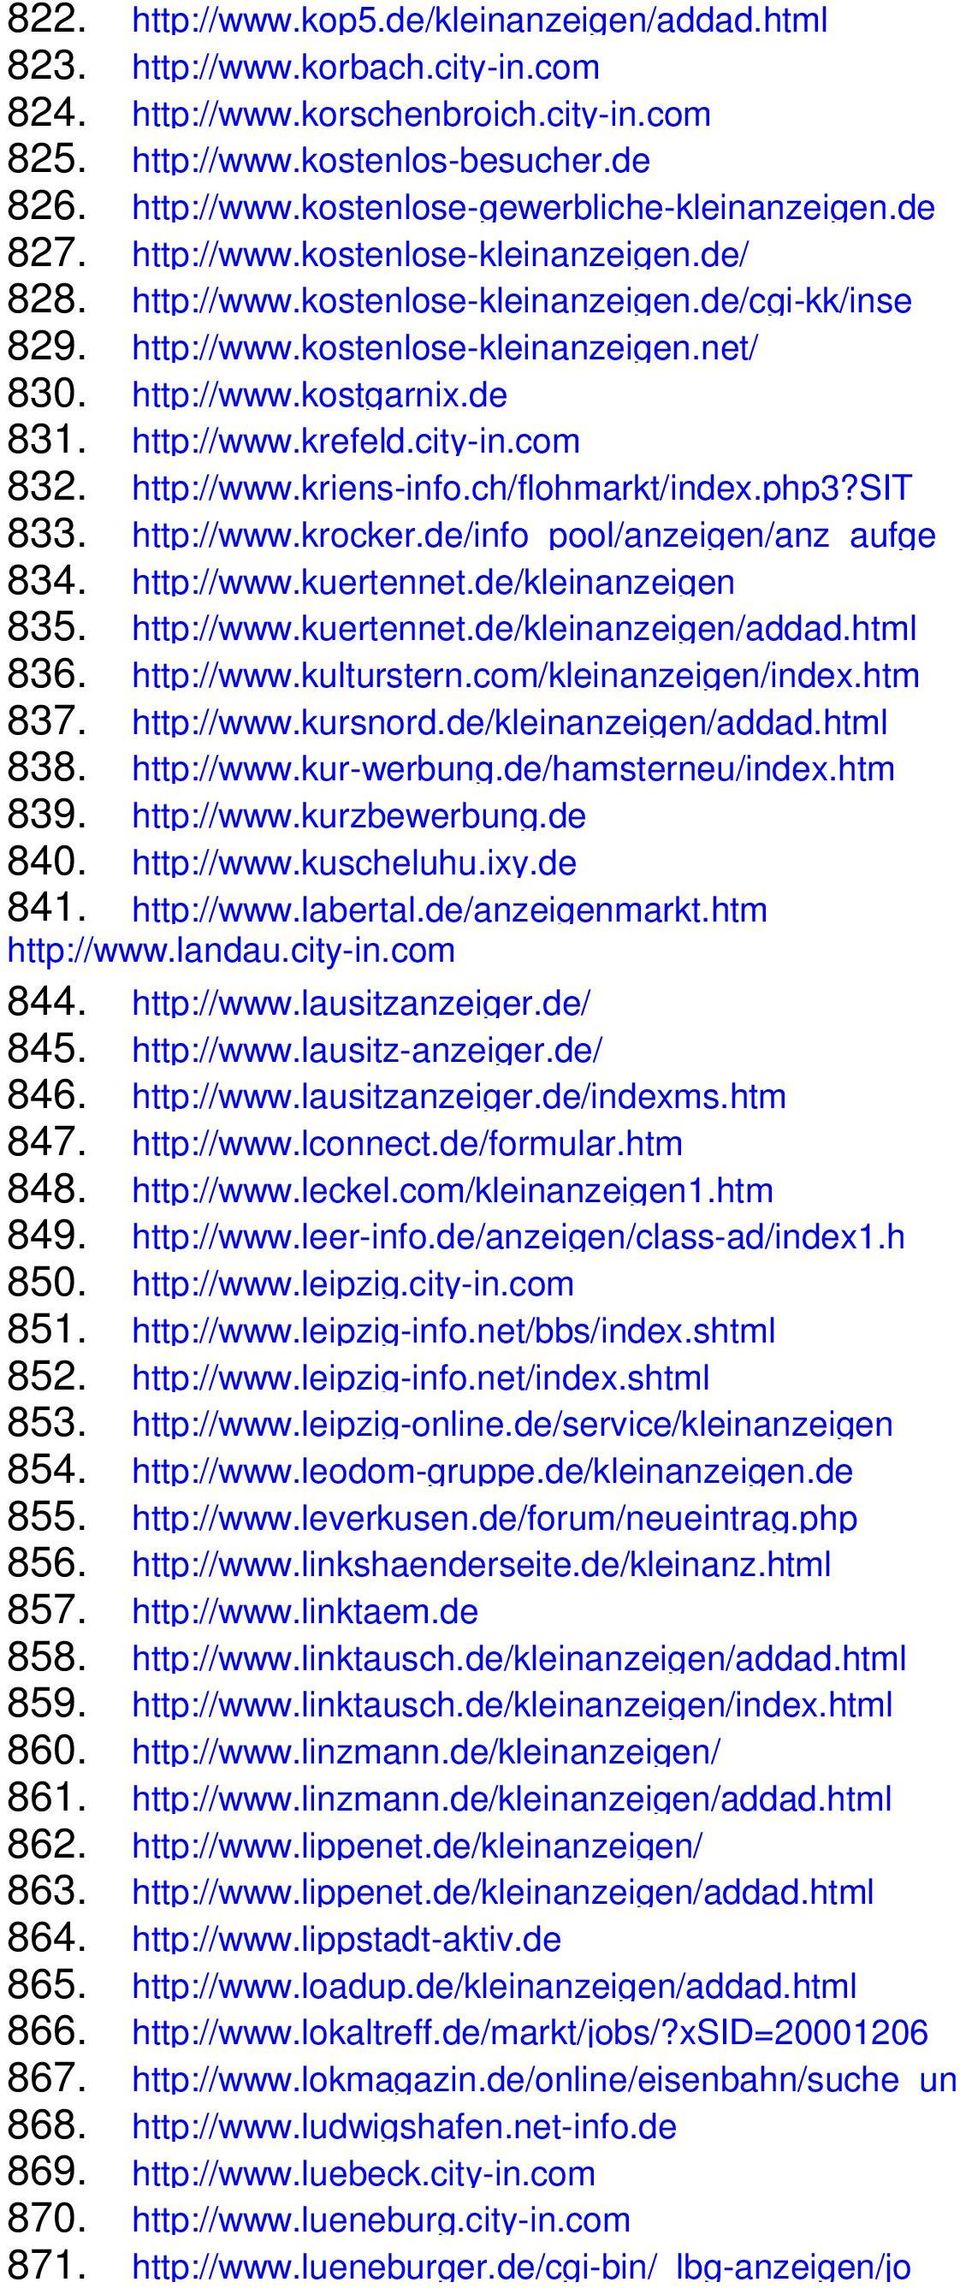 city-in.com 832. http://www.kriens-info.ch/flohmarkt/index.php3?sit 833. http://www.krocker.de/info_pool/anzeigen/anz_aufge 834. http://www.kuertennet.de/kleinanzeigen 835. http://www.kuertennet.de/kleinanzeigen/addad.